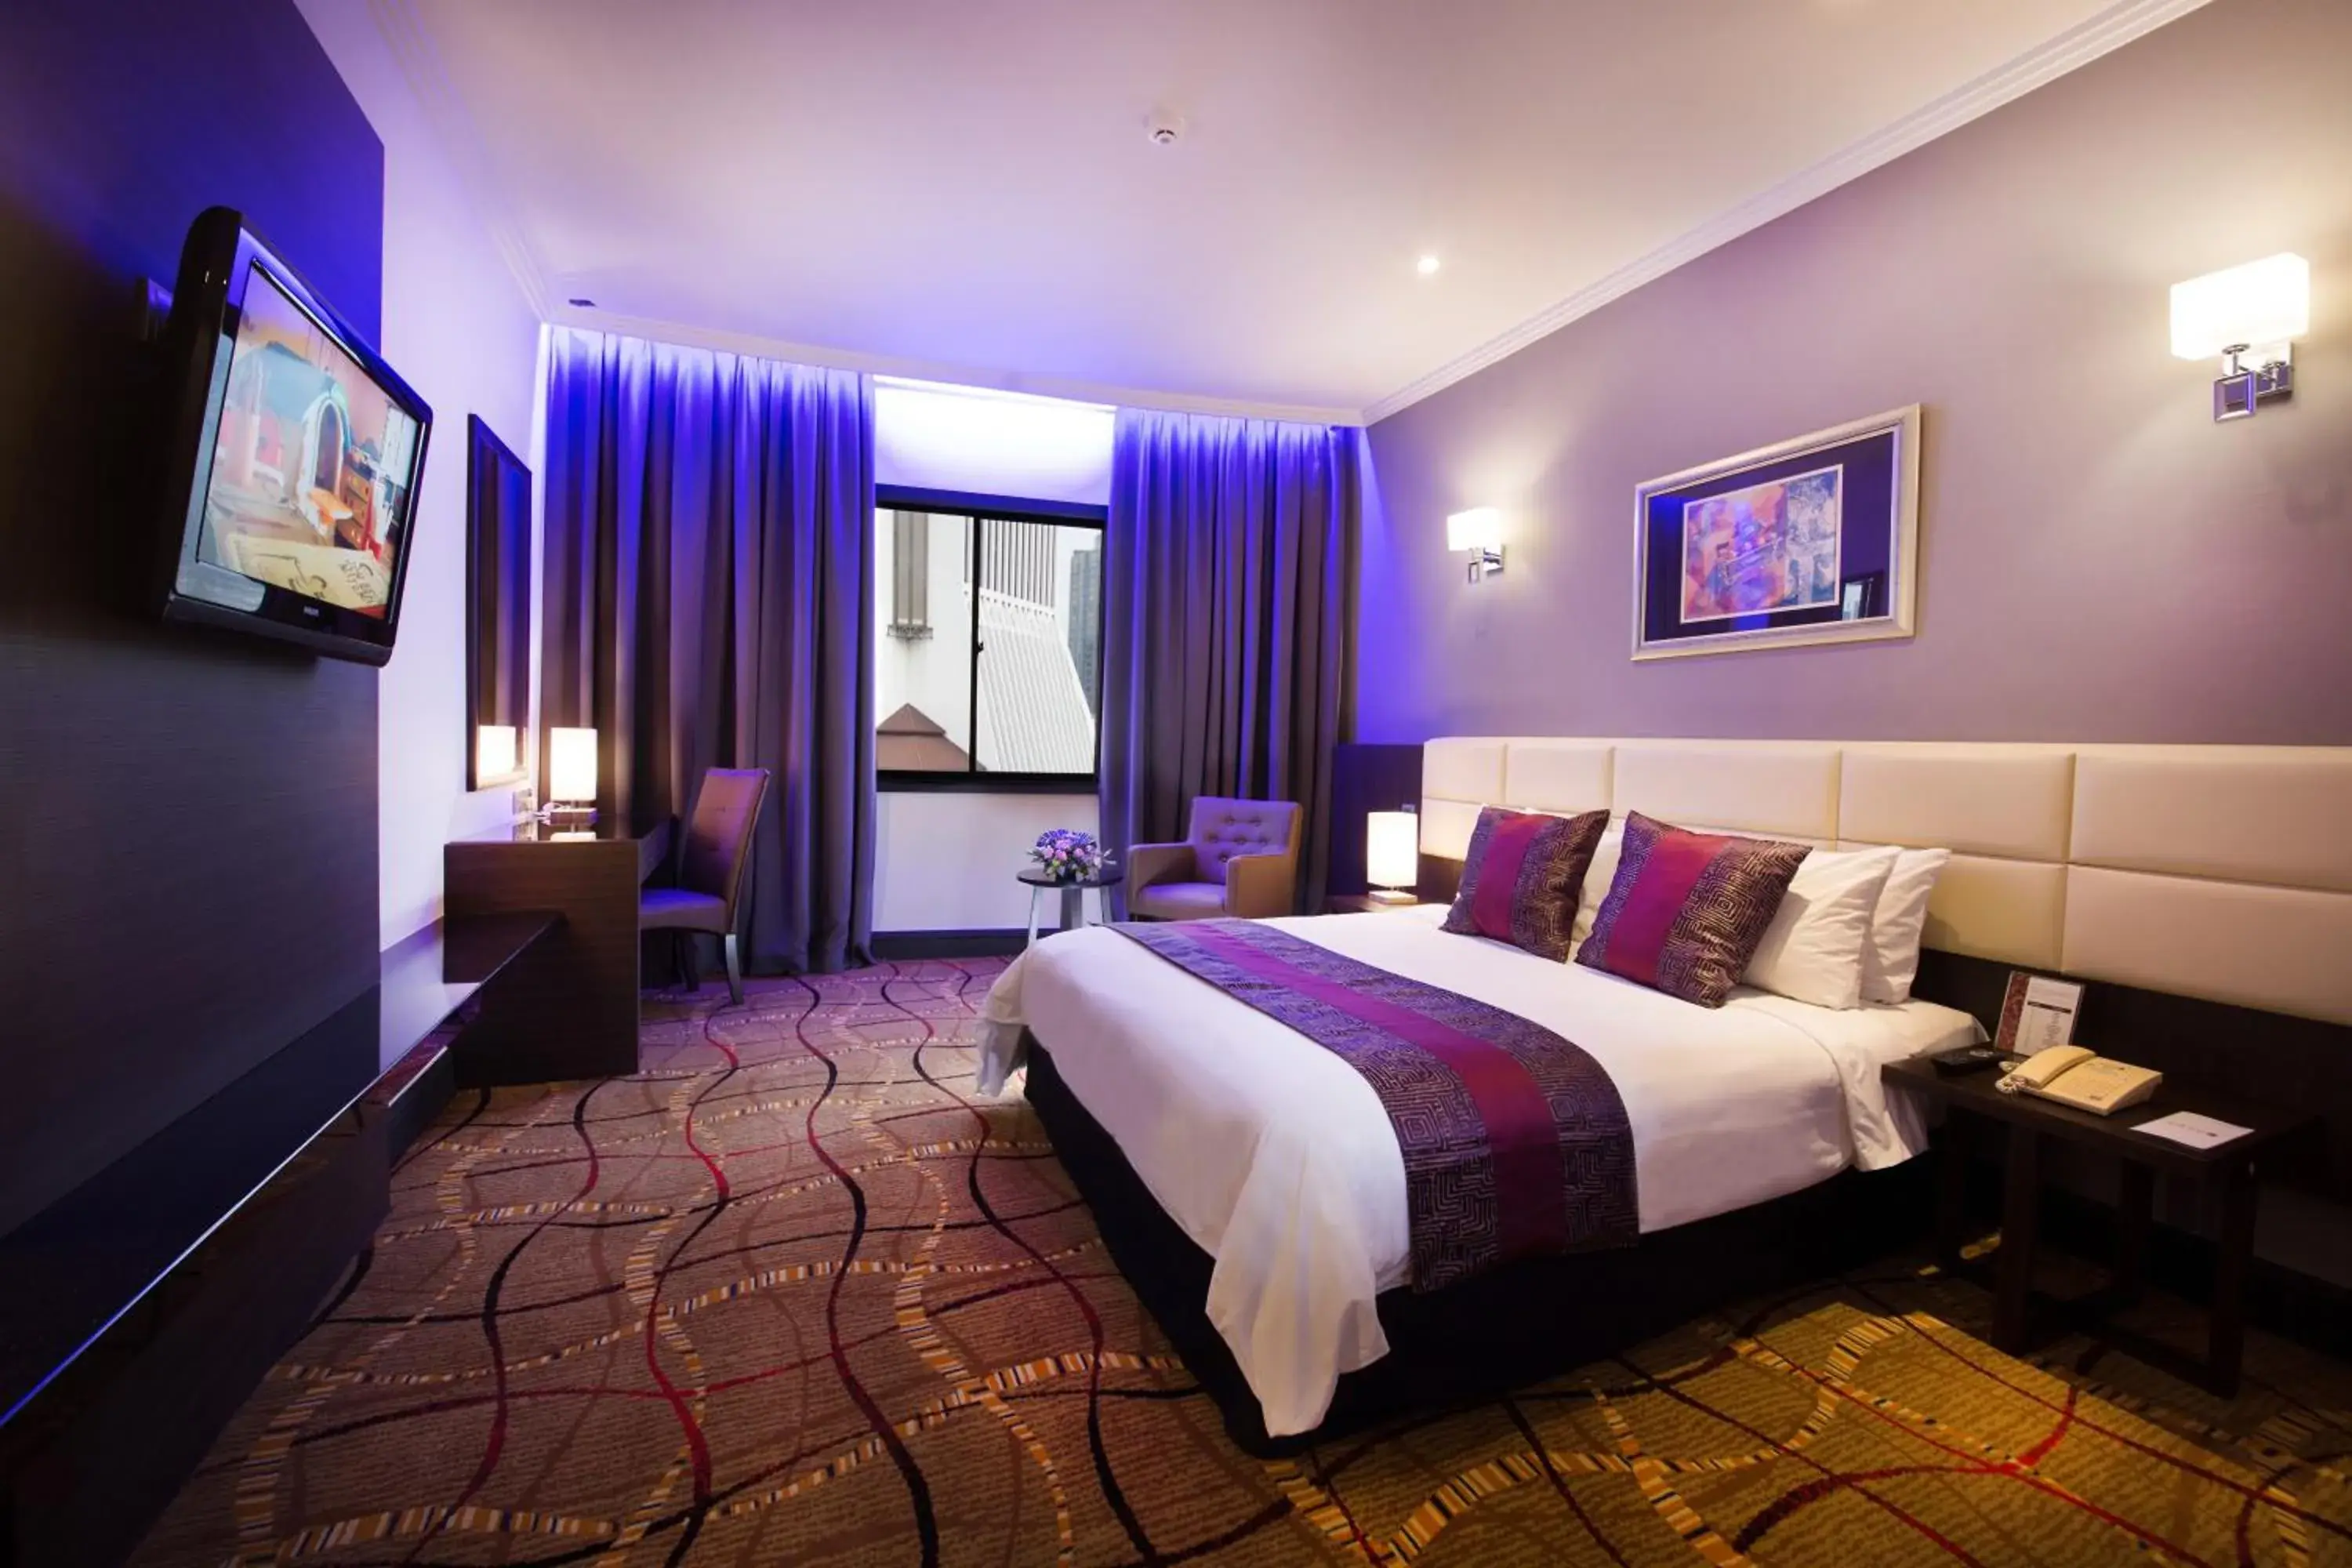 Bed in AnCasa Hotel Kuala Lumpur by Ancasa Hotels & Resorts